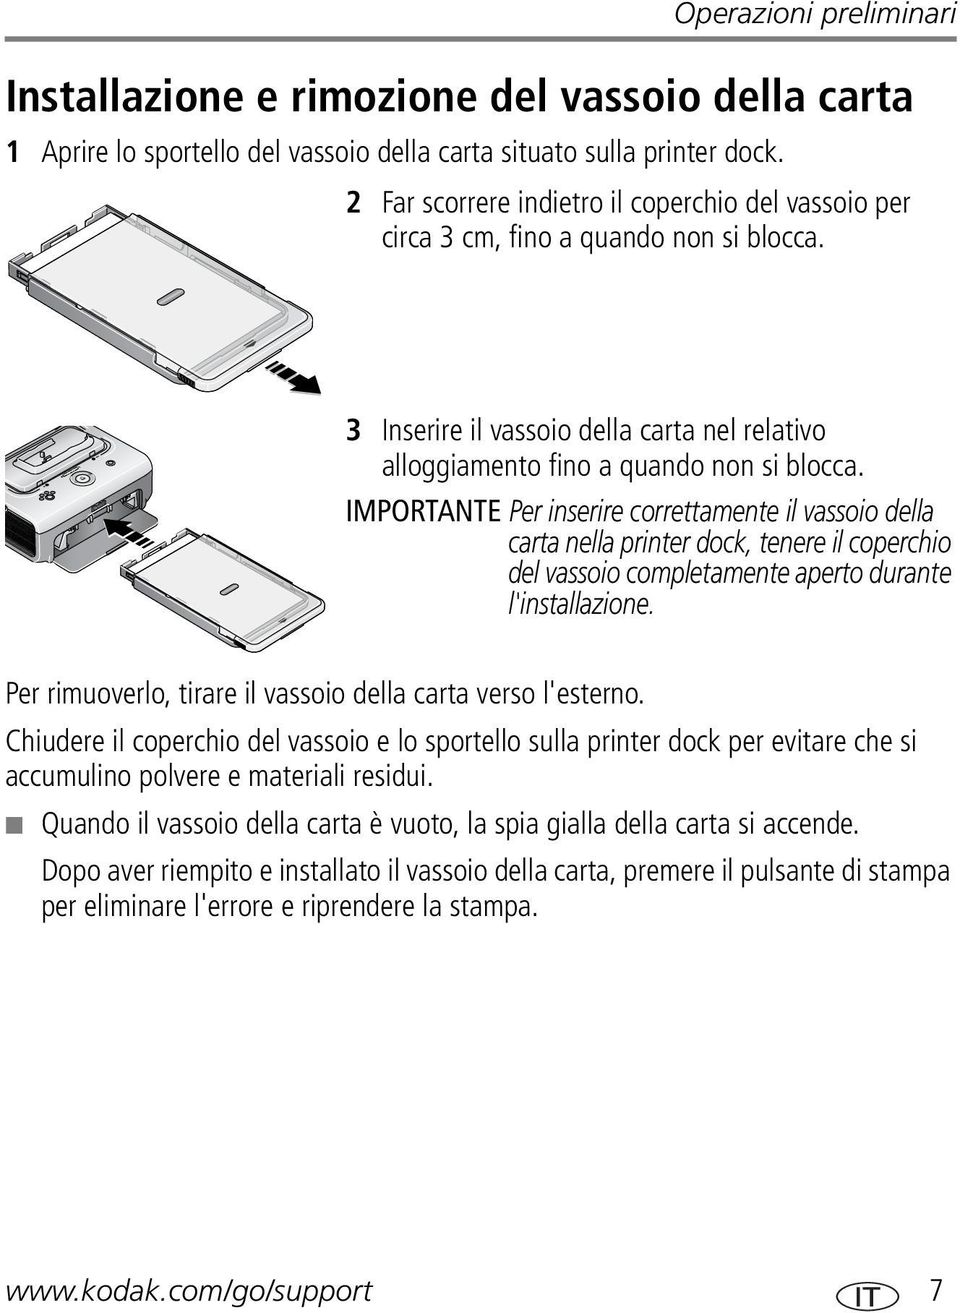 IMPORTANTE Per inserire correttamente il vassoio della carta nella printer dock, tenere il coperchio del vassoio completamente aperto durante l'installazione.